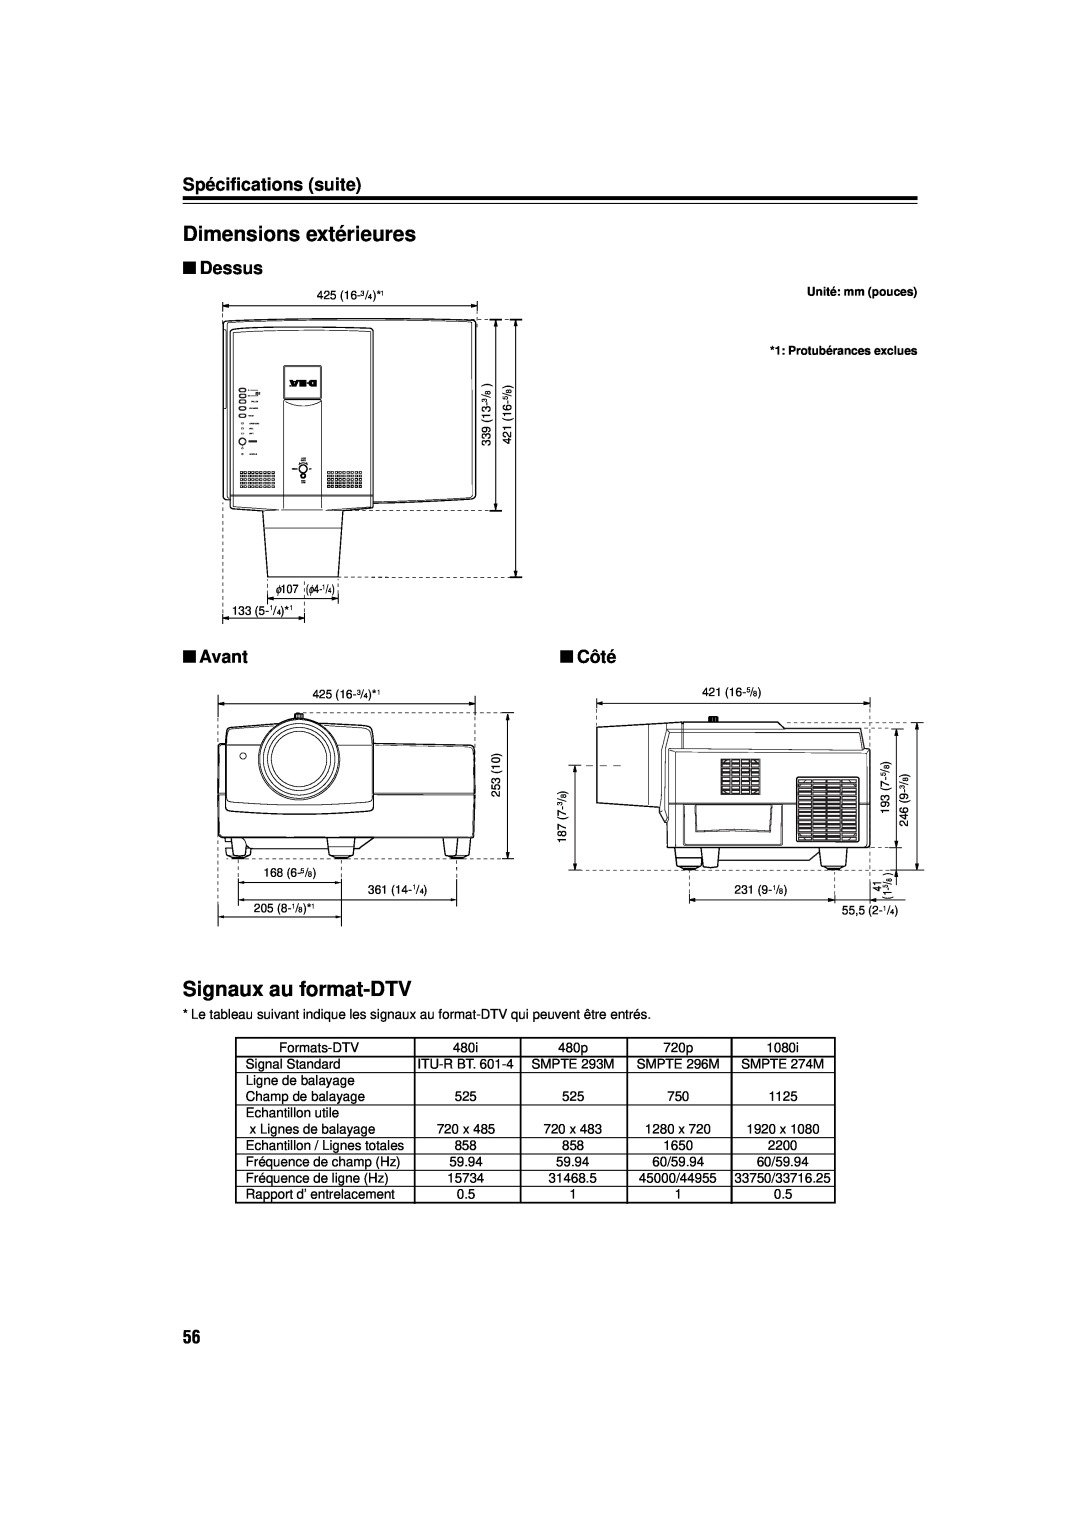 JVC DLA-M15U manual Dimensions extérieures, Signaux au format-DTV, Spécifications suite, Dessus, Avant, Côté 